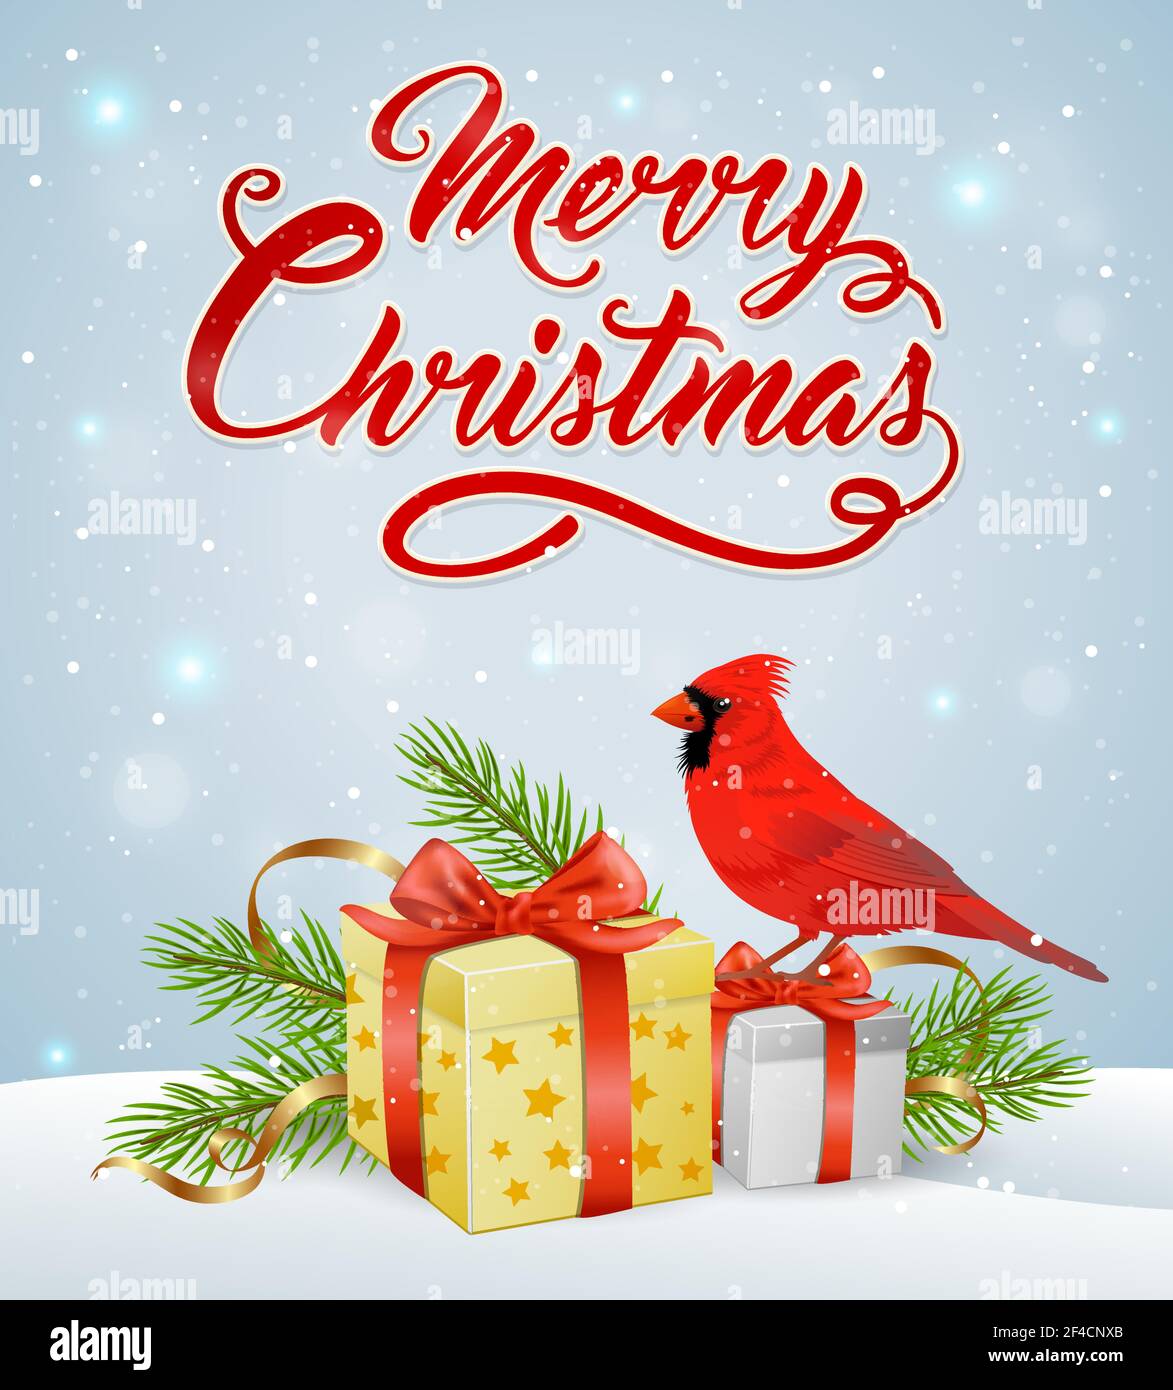 Vektor Weihnachten Hintergrund mit roten Kardinal Vogel, Geschenke und Schnee. Fröhliche Weihnachtsschrift Stock Vektor